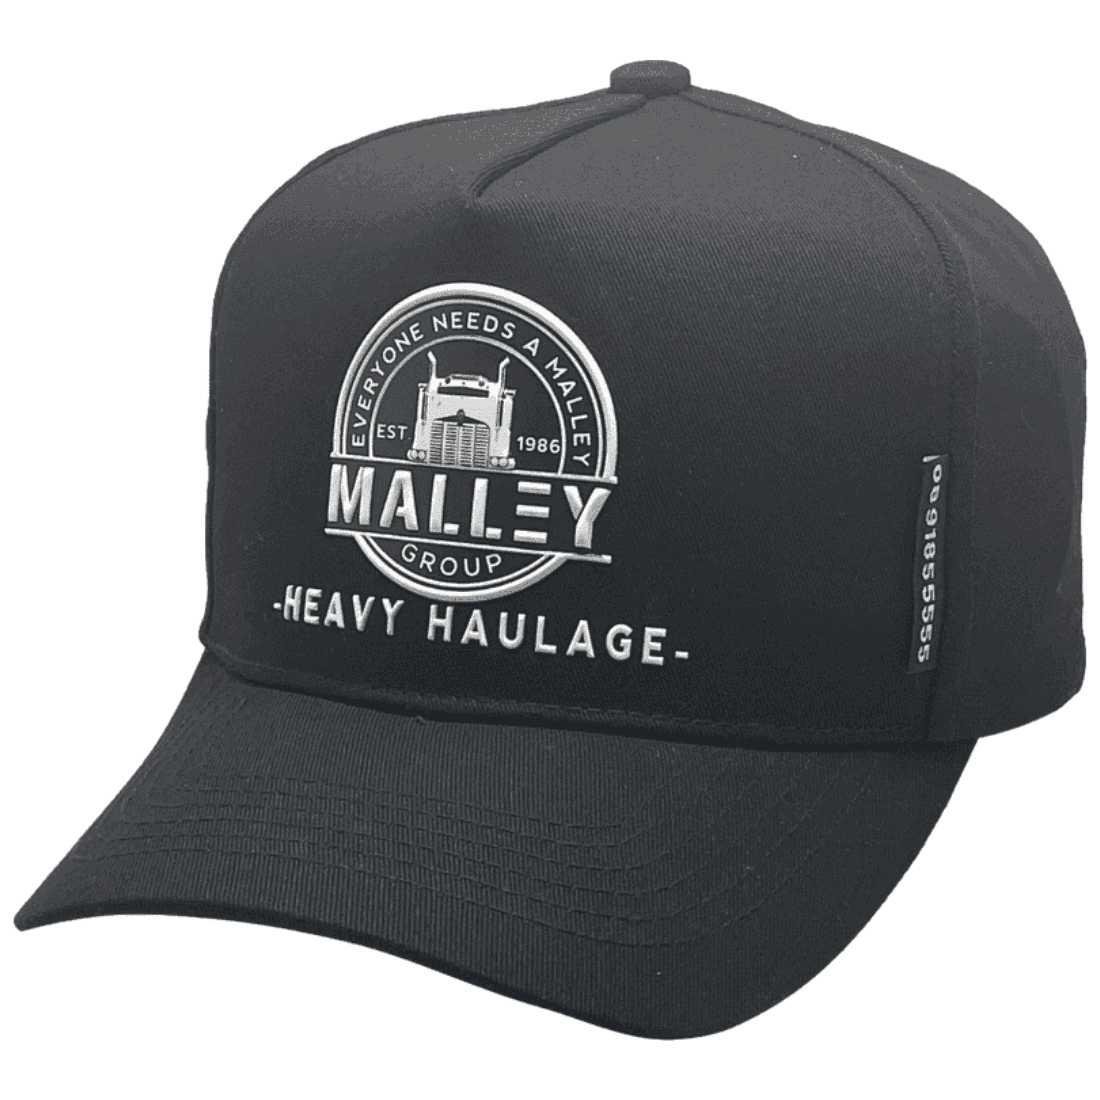 Malley Group Heavy Haulage -Basic Aussie Trucker Hat Cotton HP Black